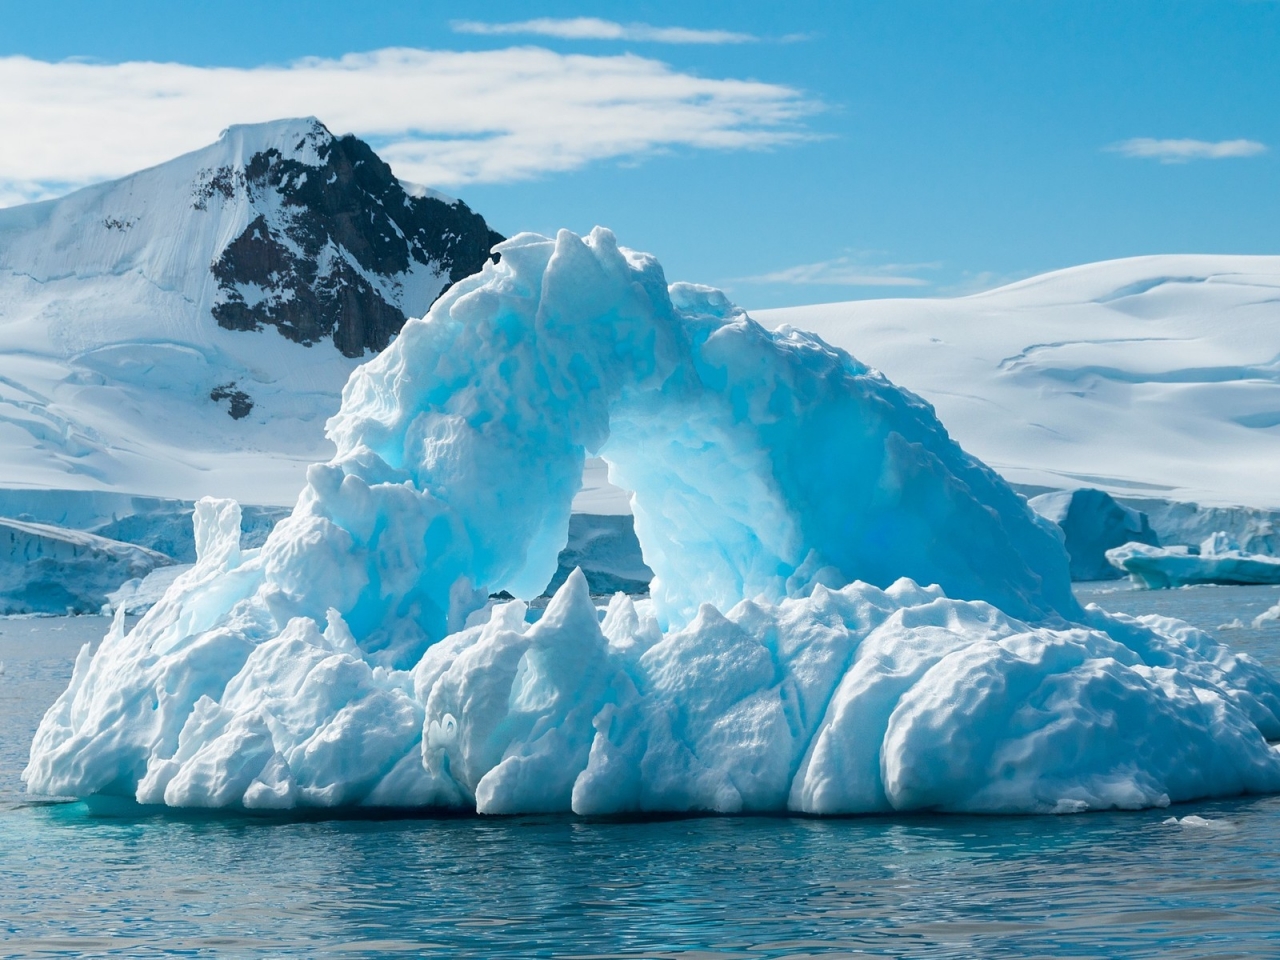 Blue Iceberg for 1280 x 960 resolution